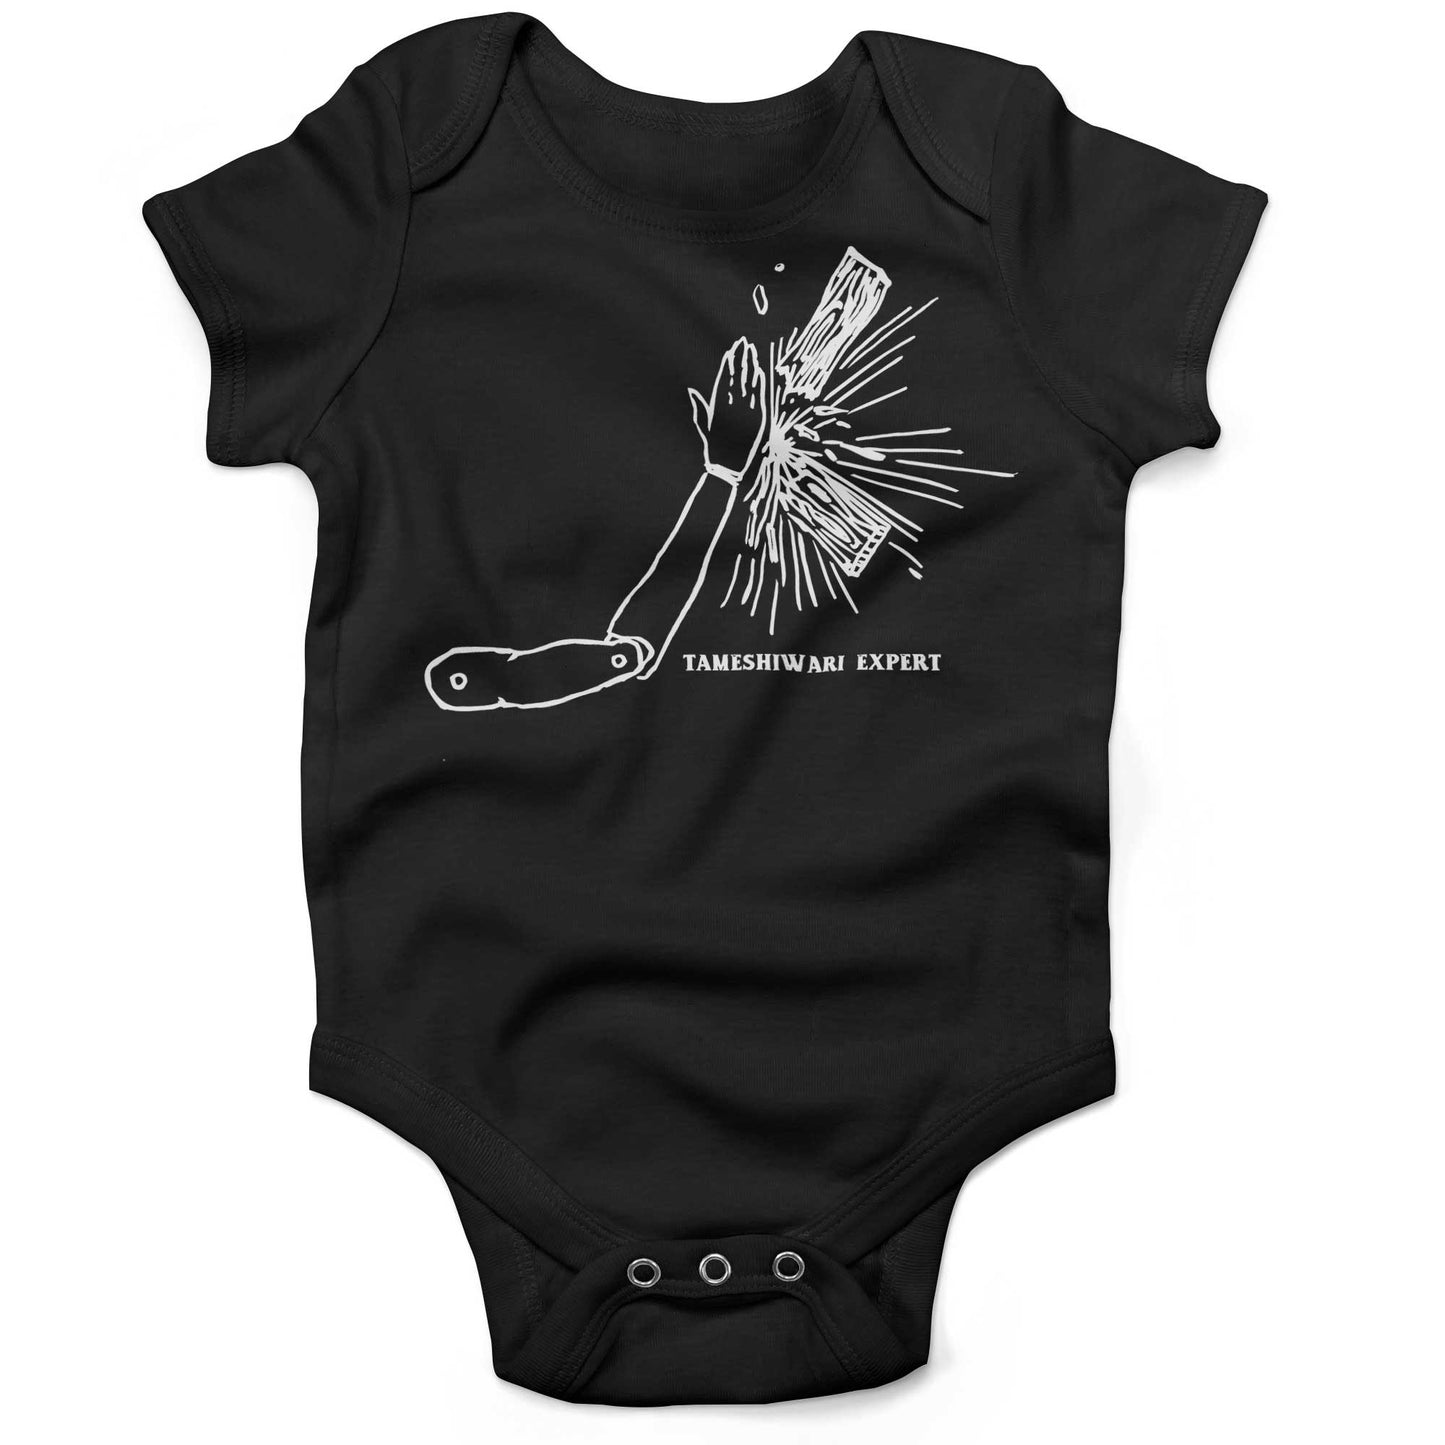 Tameshiwari Expert Infant Bodysuit-Organic Black-3-6 months